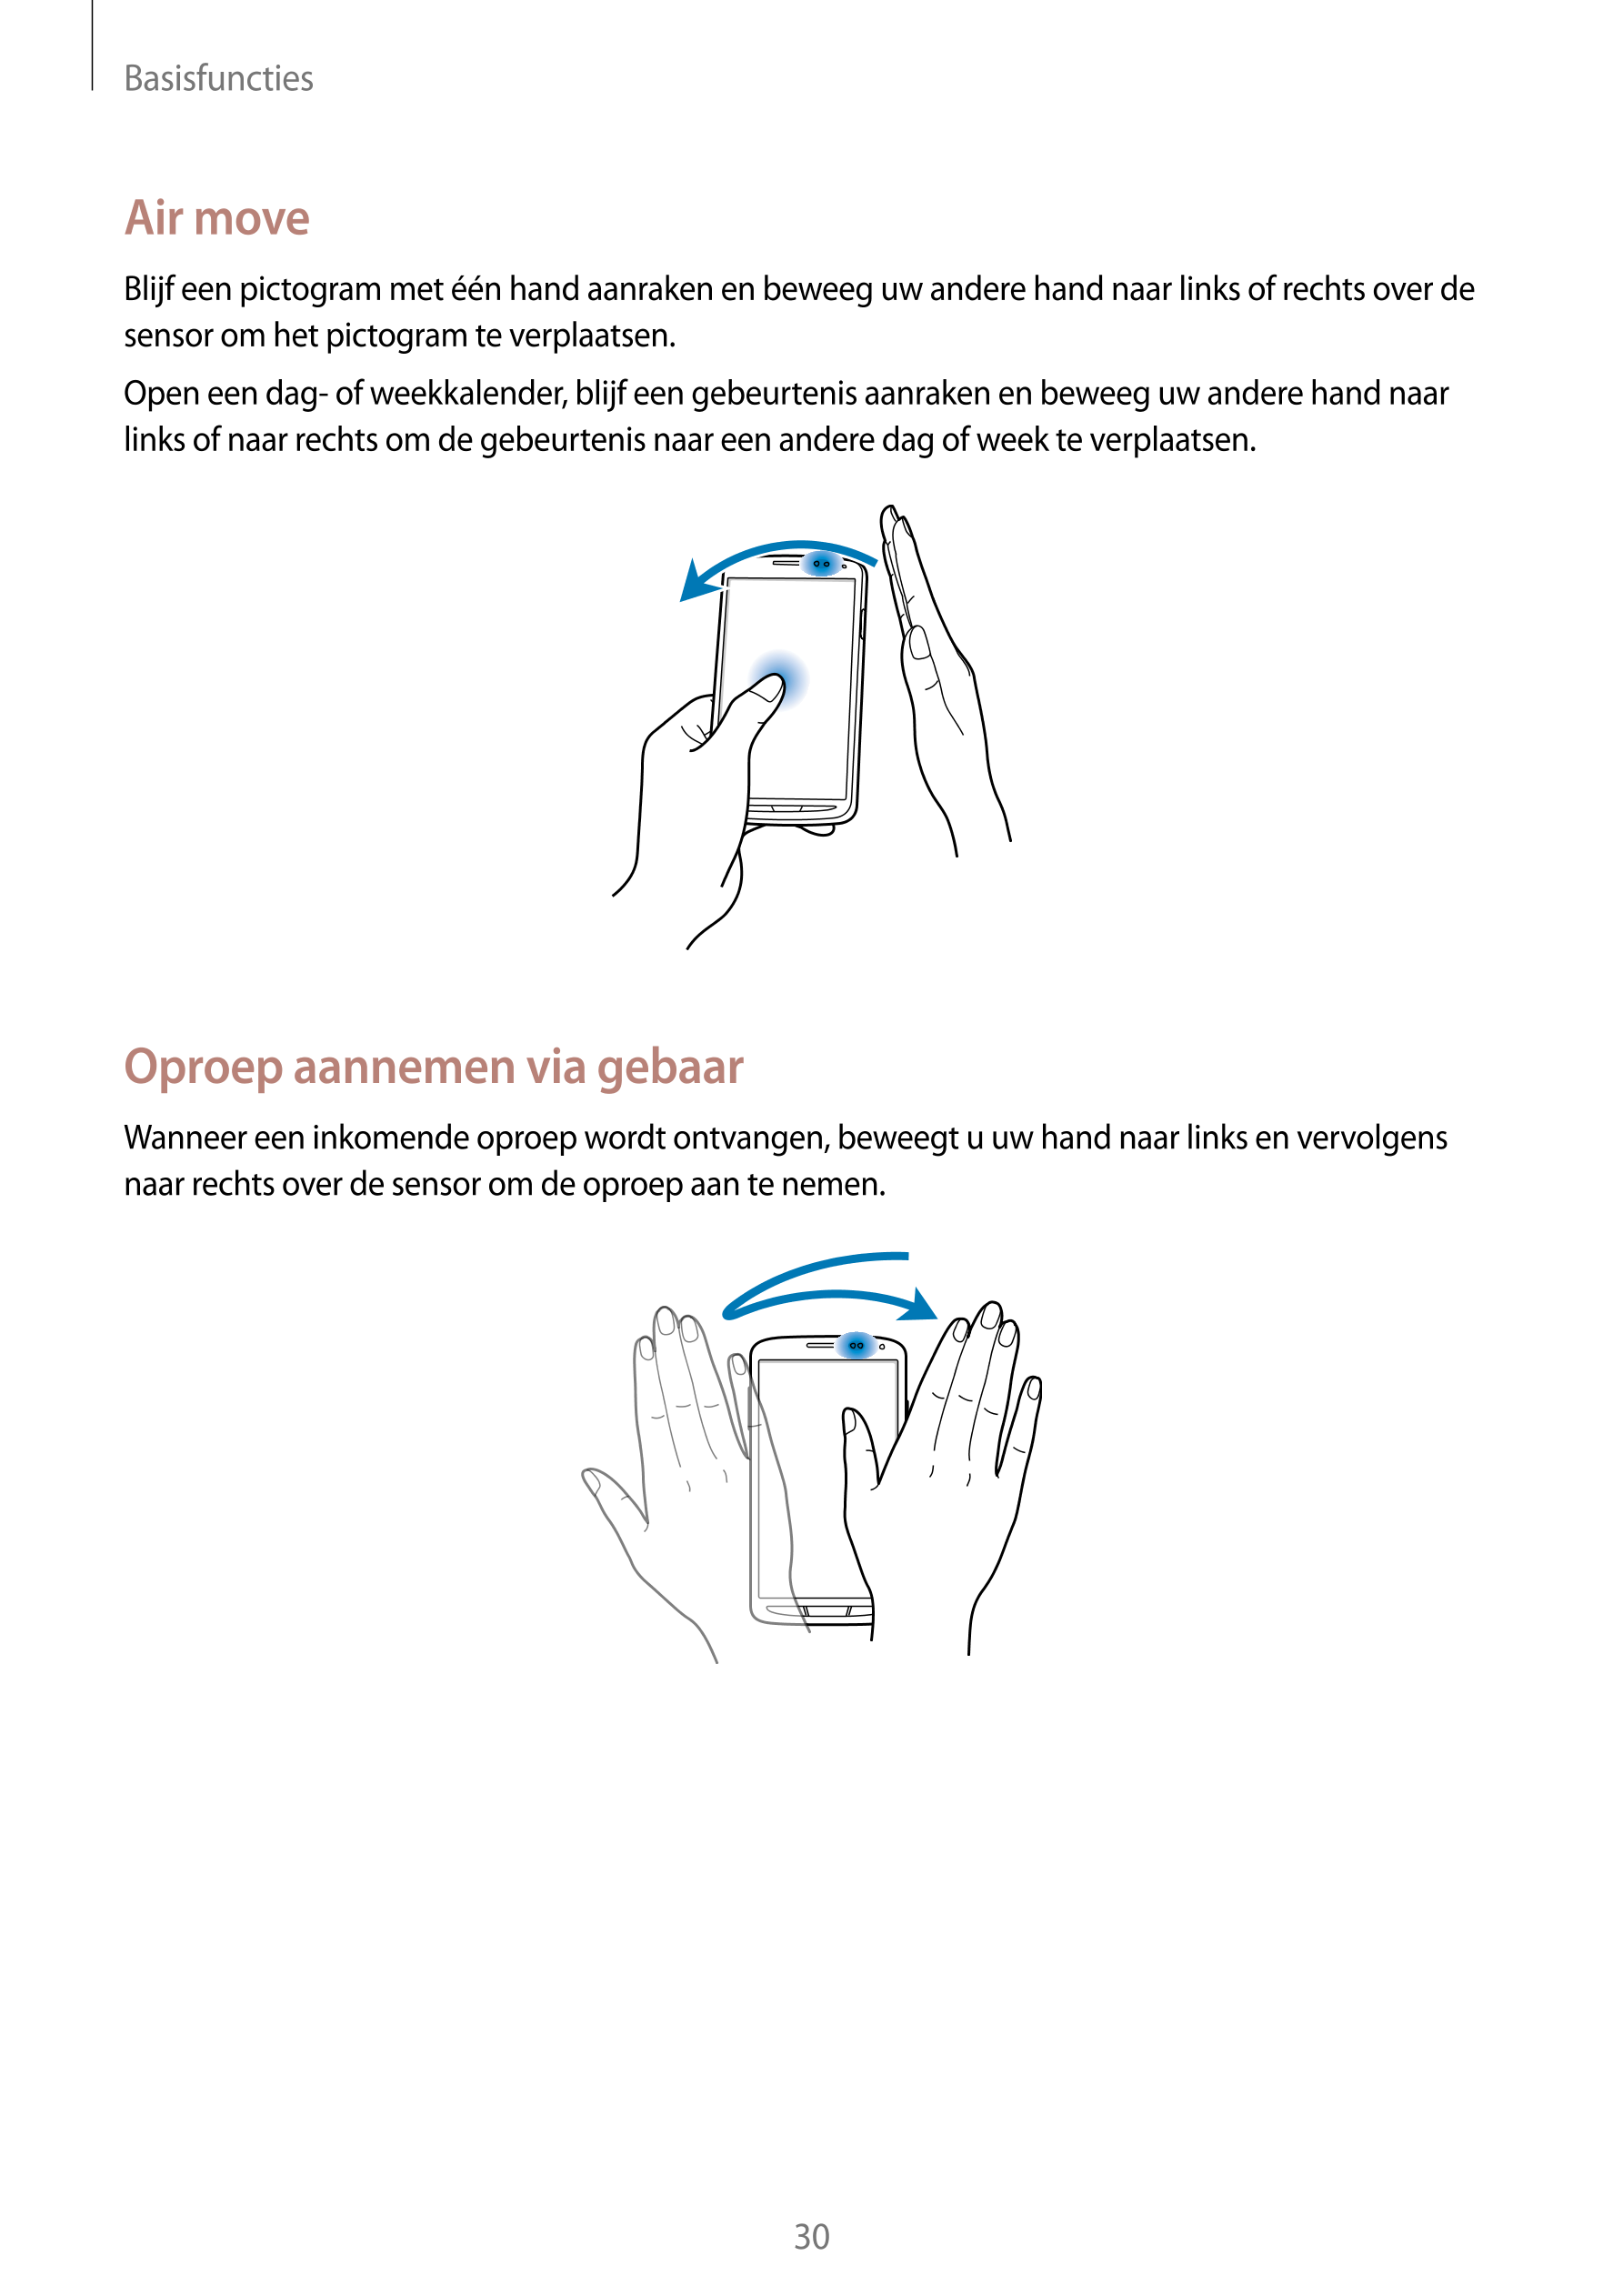 Basisfuncties
Air move
Blijf een pictogram met één hand aanraken en beweeg uw andere hand naar links of rechts over de 
sensor o